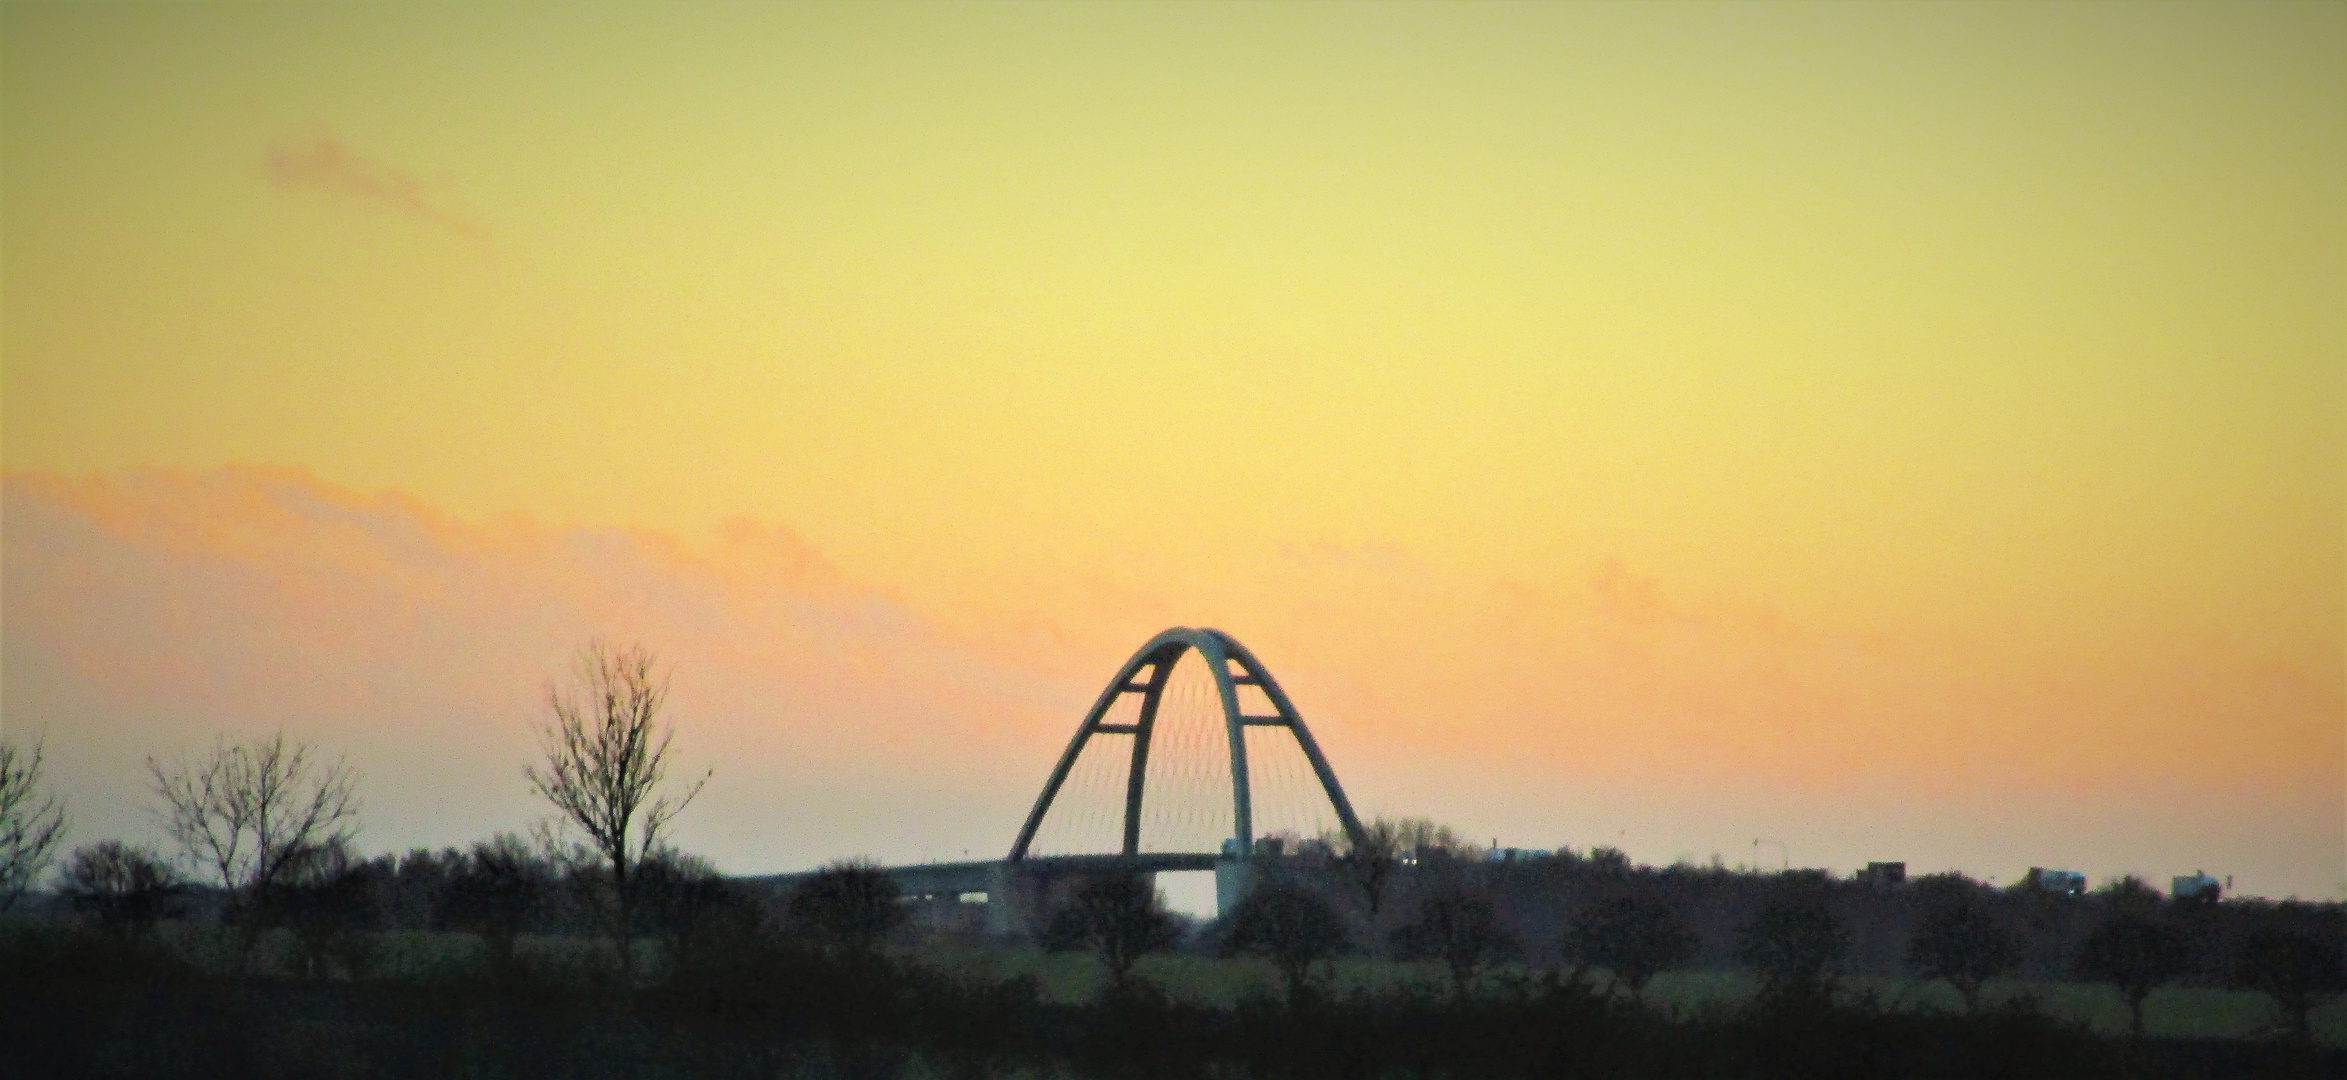 Fehmarnsundbrücke im Sonnenuntergang 